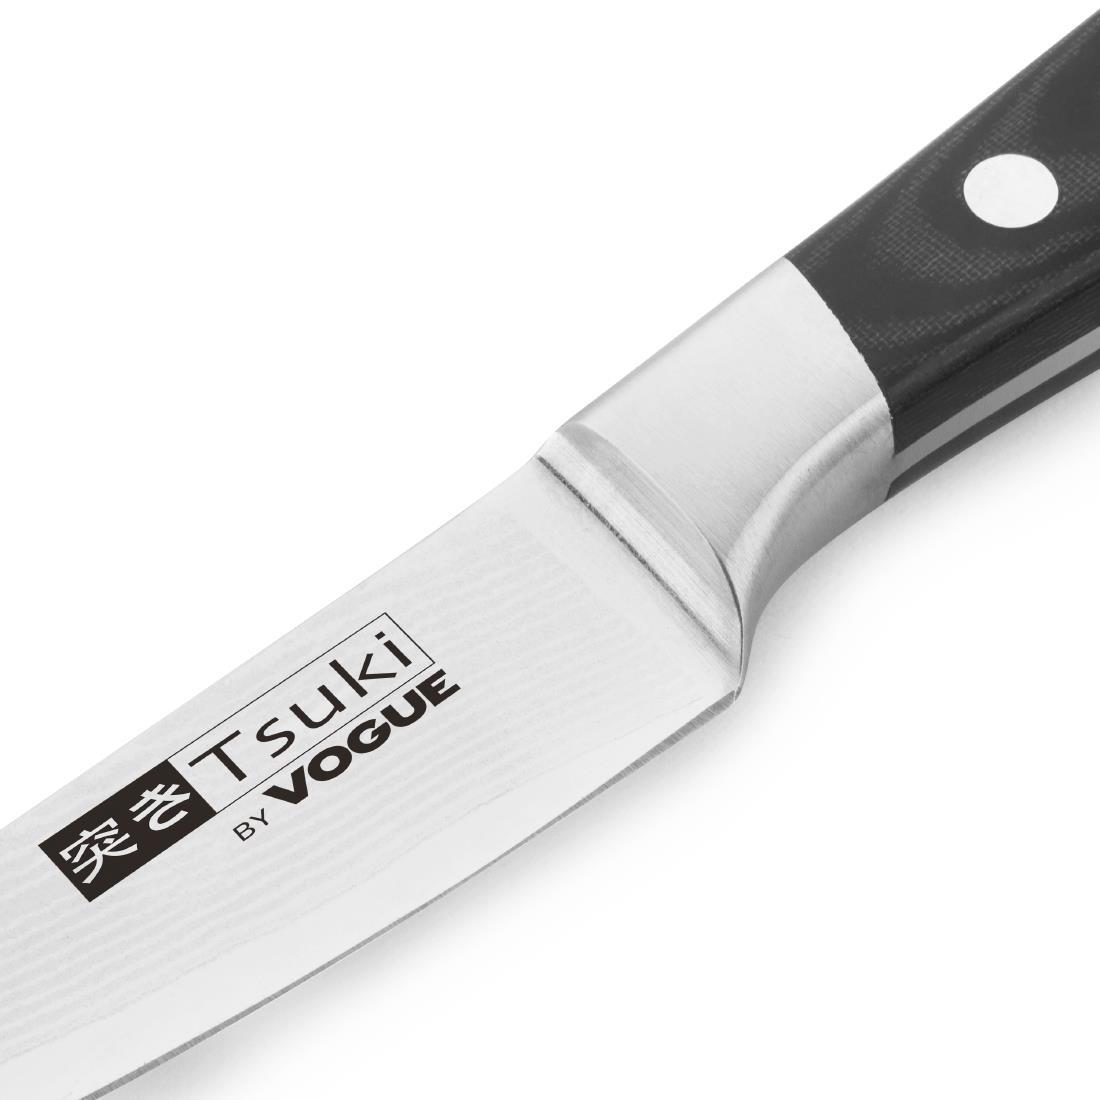 Vogue Tsuki Series 7 Paring Knife 9cm - CF894  - 3